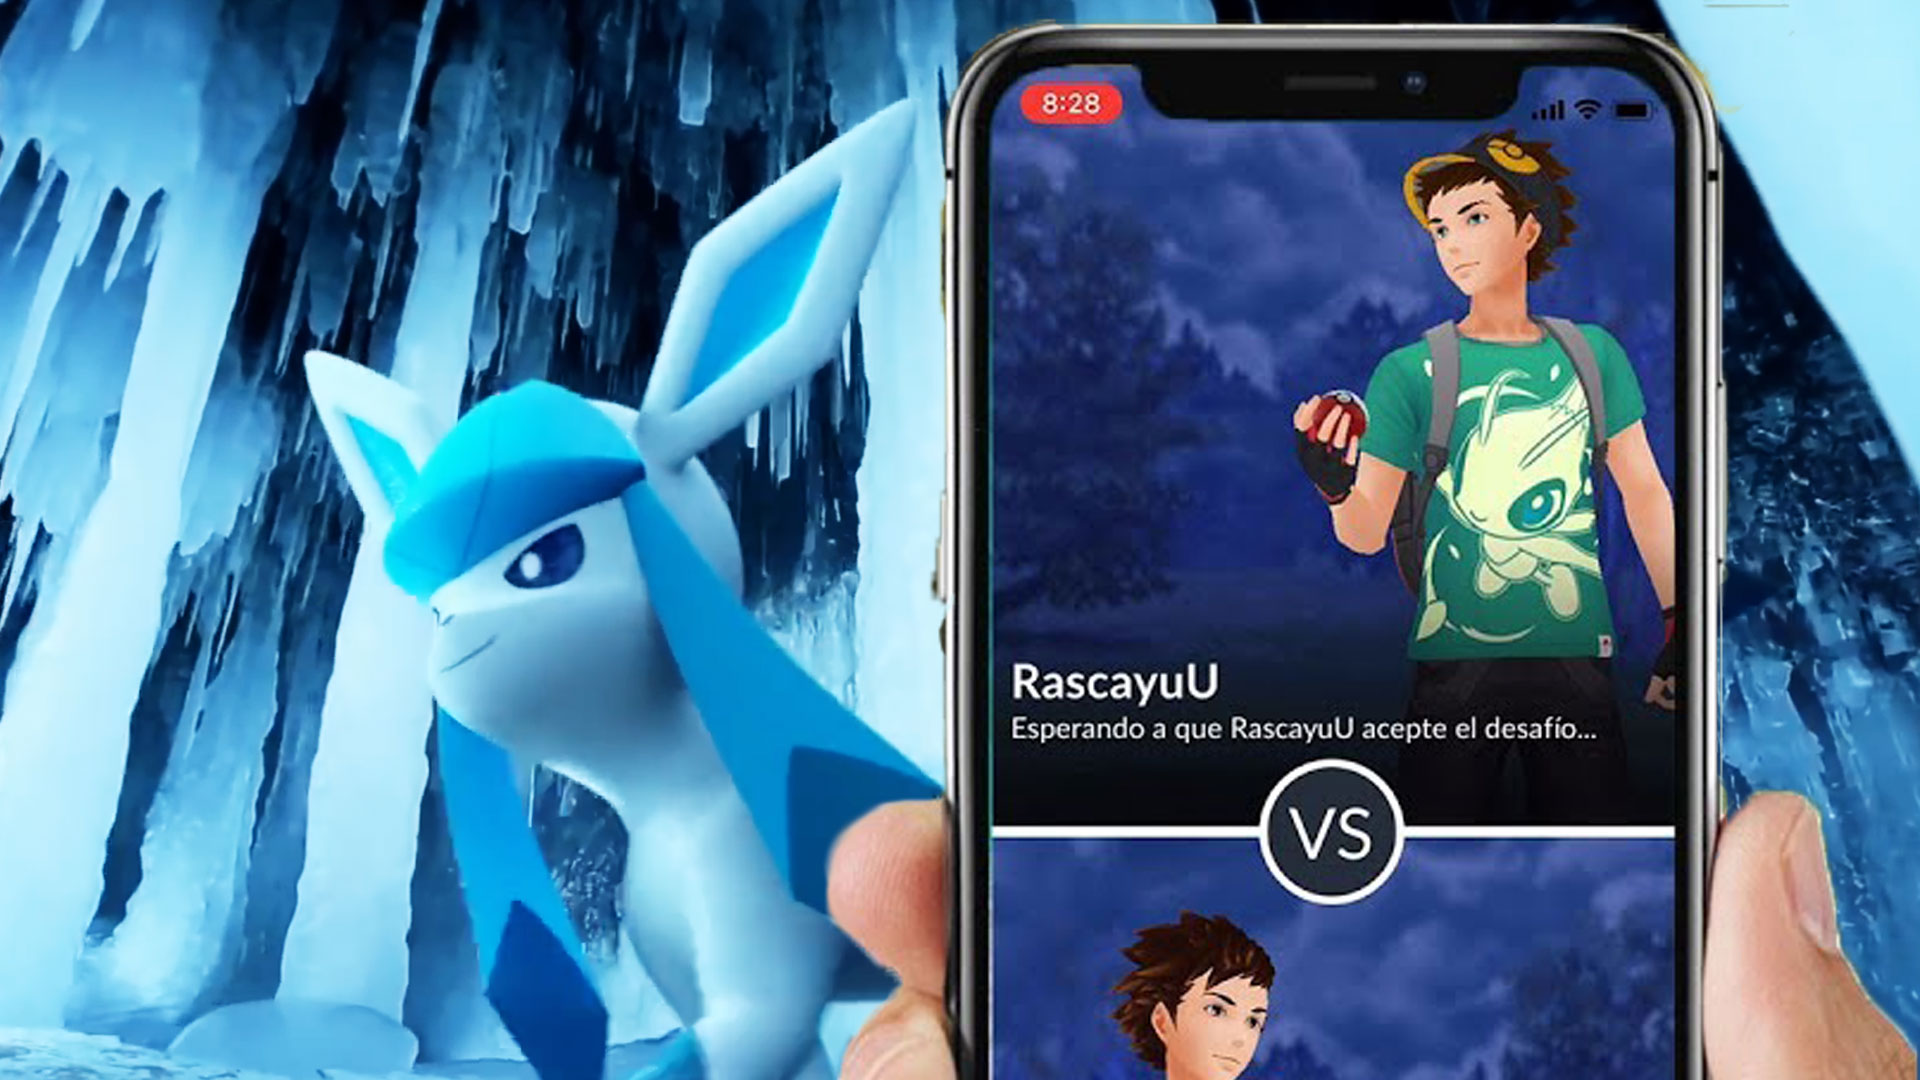 ¡Pokémon GO evoluciona! Desafía a tus amigos con la nueva actualización de Pokémon GO